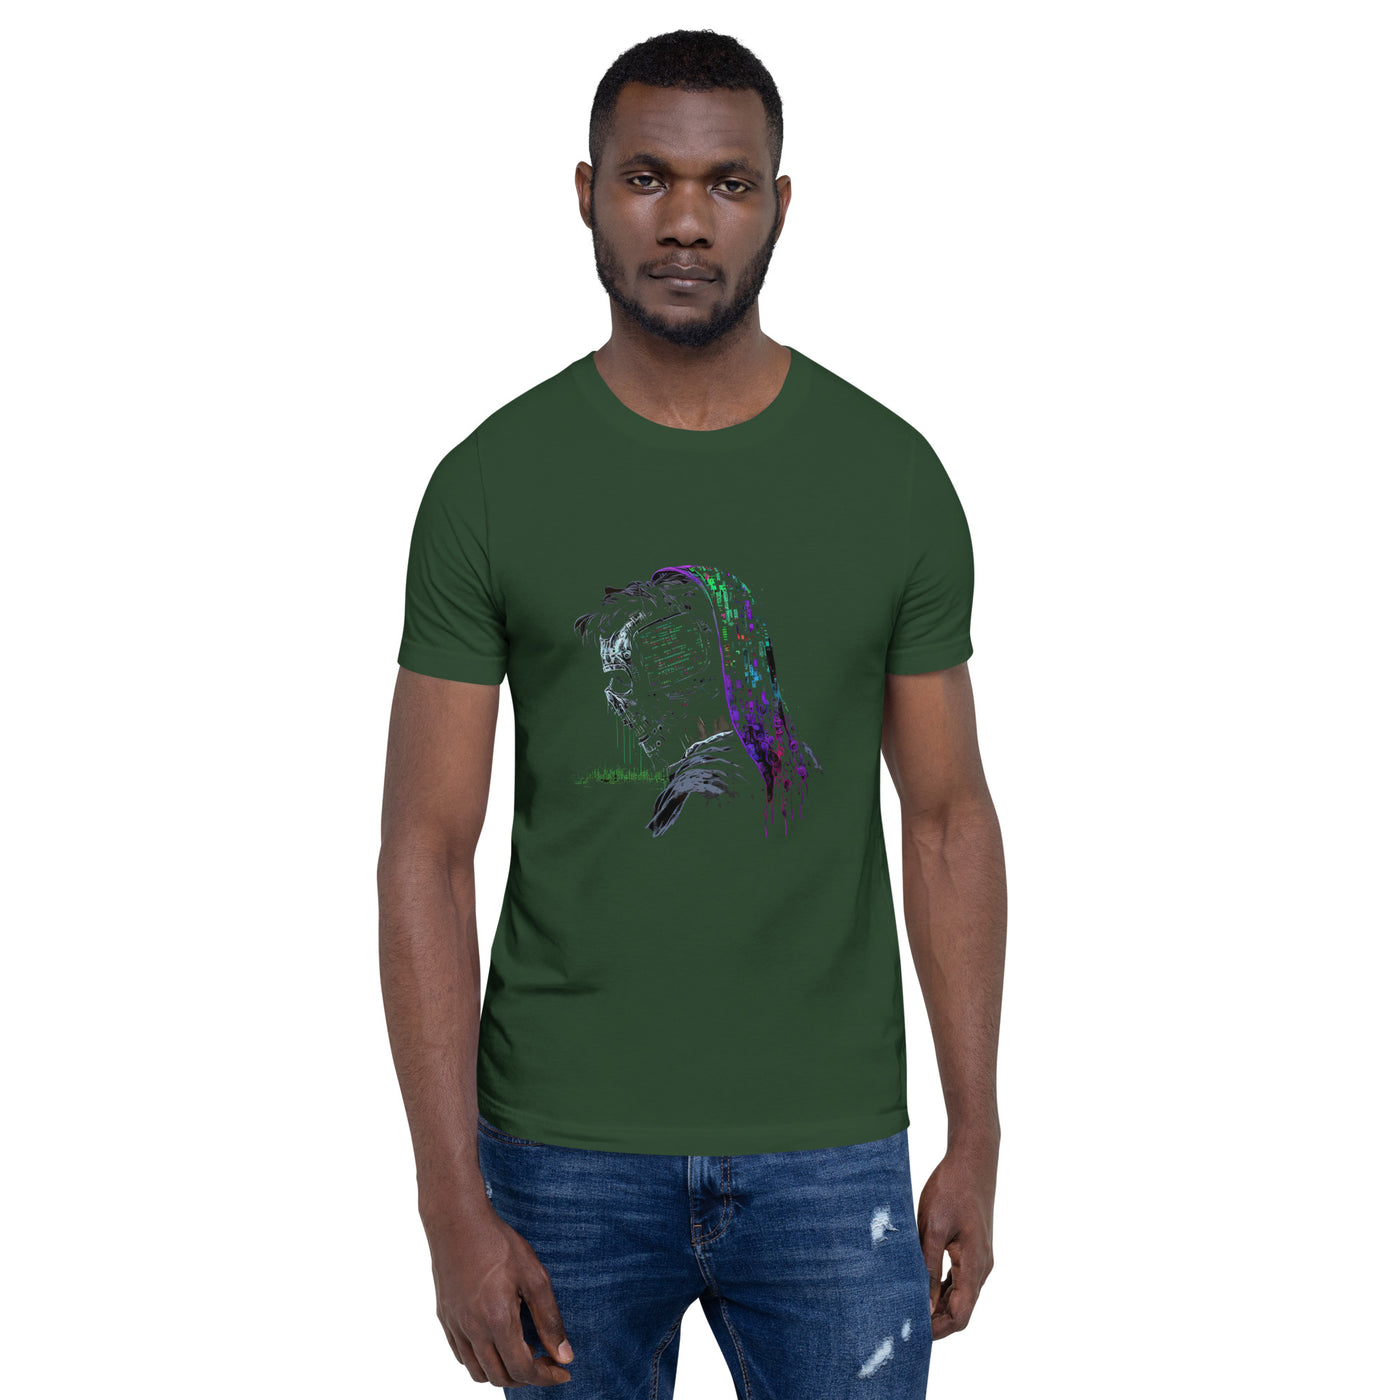 Cyberware Assassin V57 Unisex t-shirt